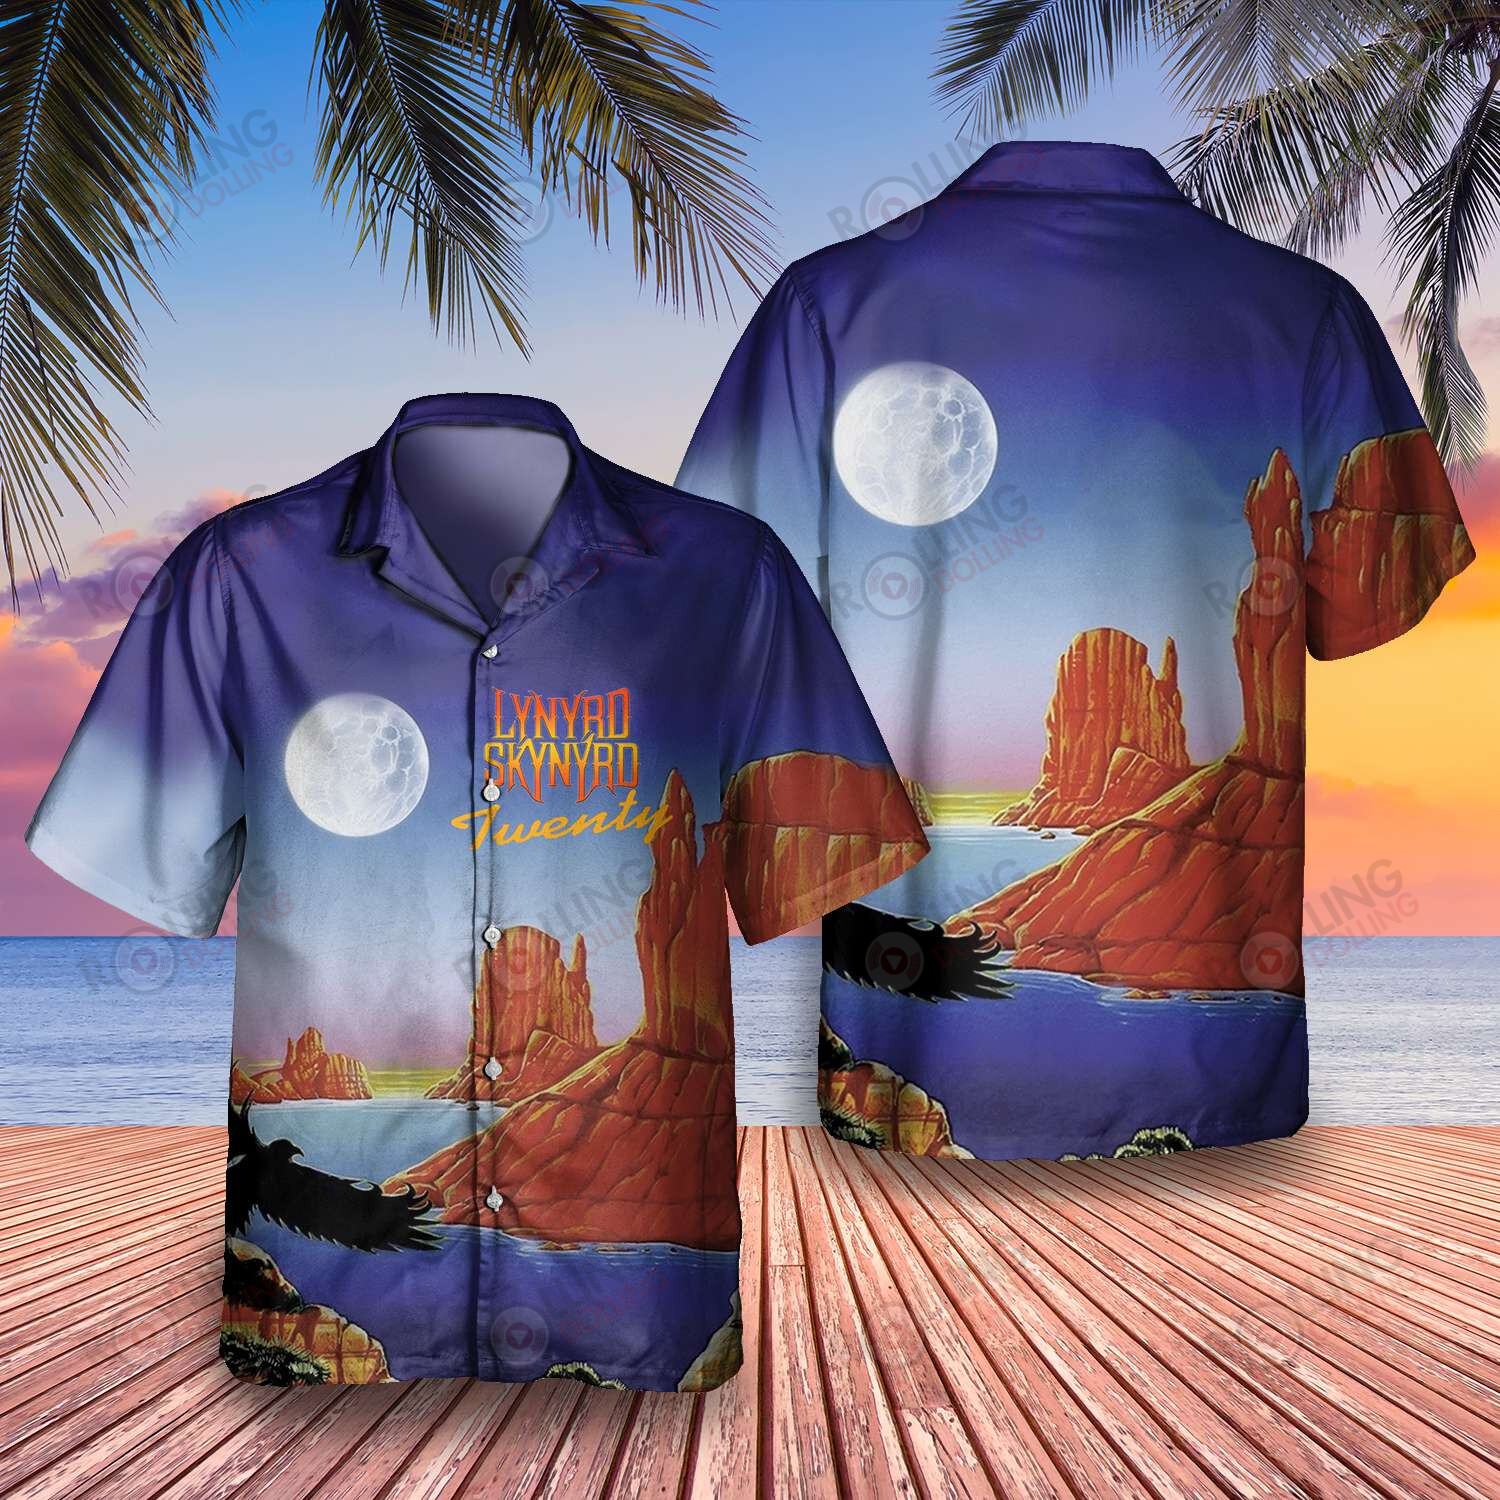 HOT Lynyrd Skynyrd Band Twenty Hawaii Shirt1